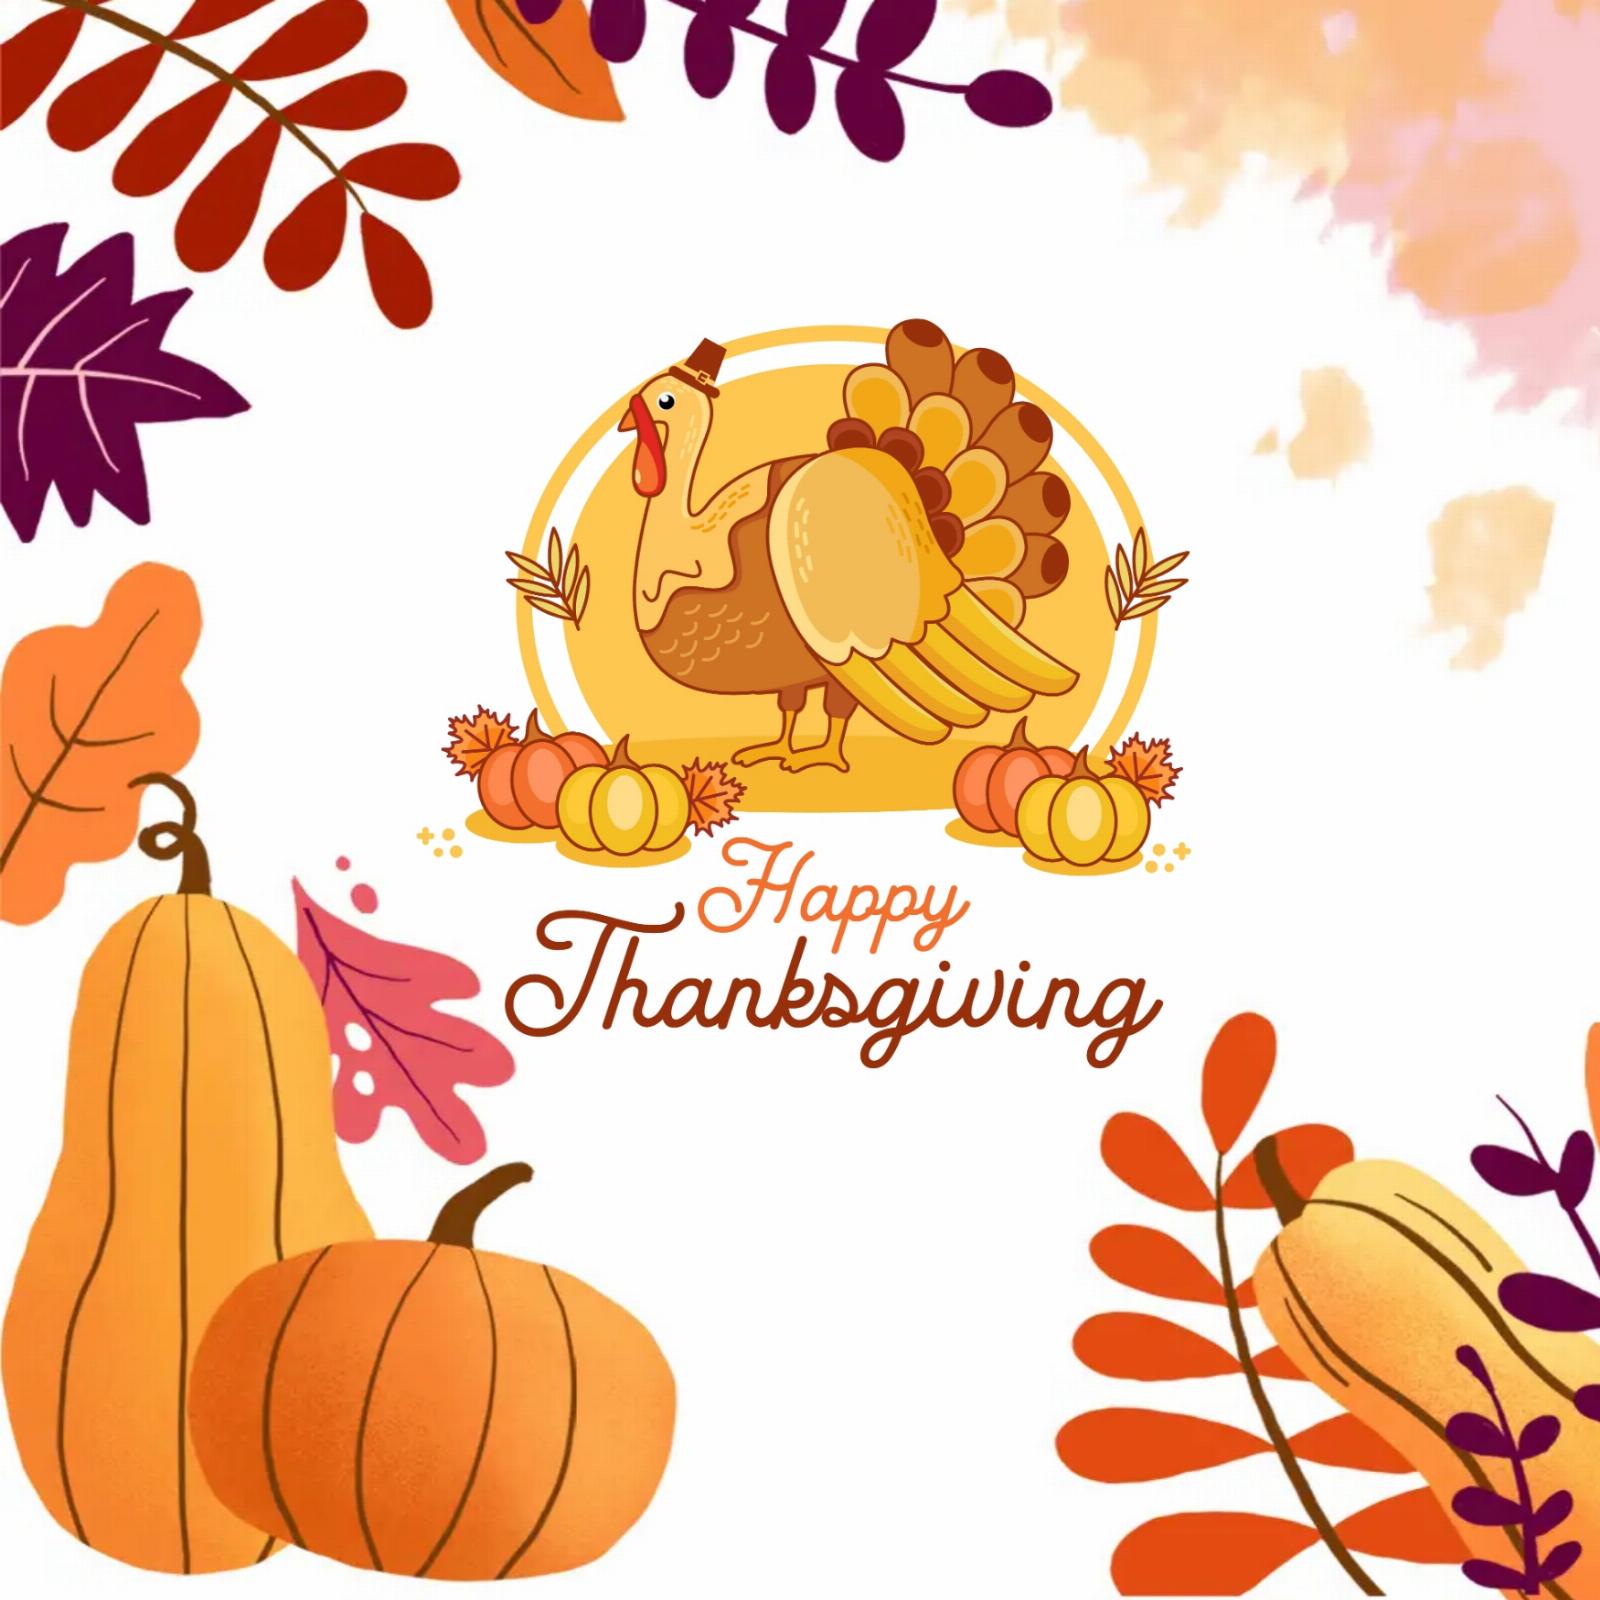 Happy Thanksgiving Animated Images - ShayariMaza